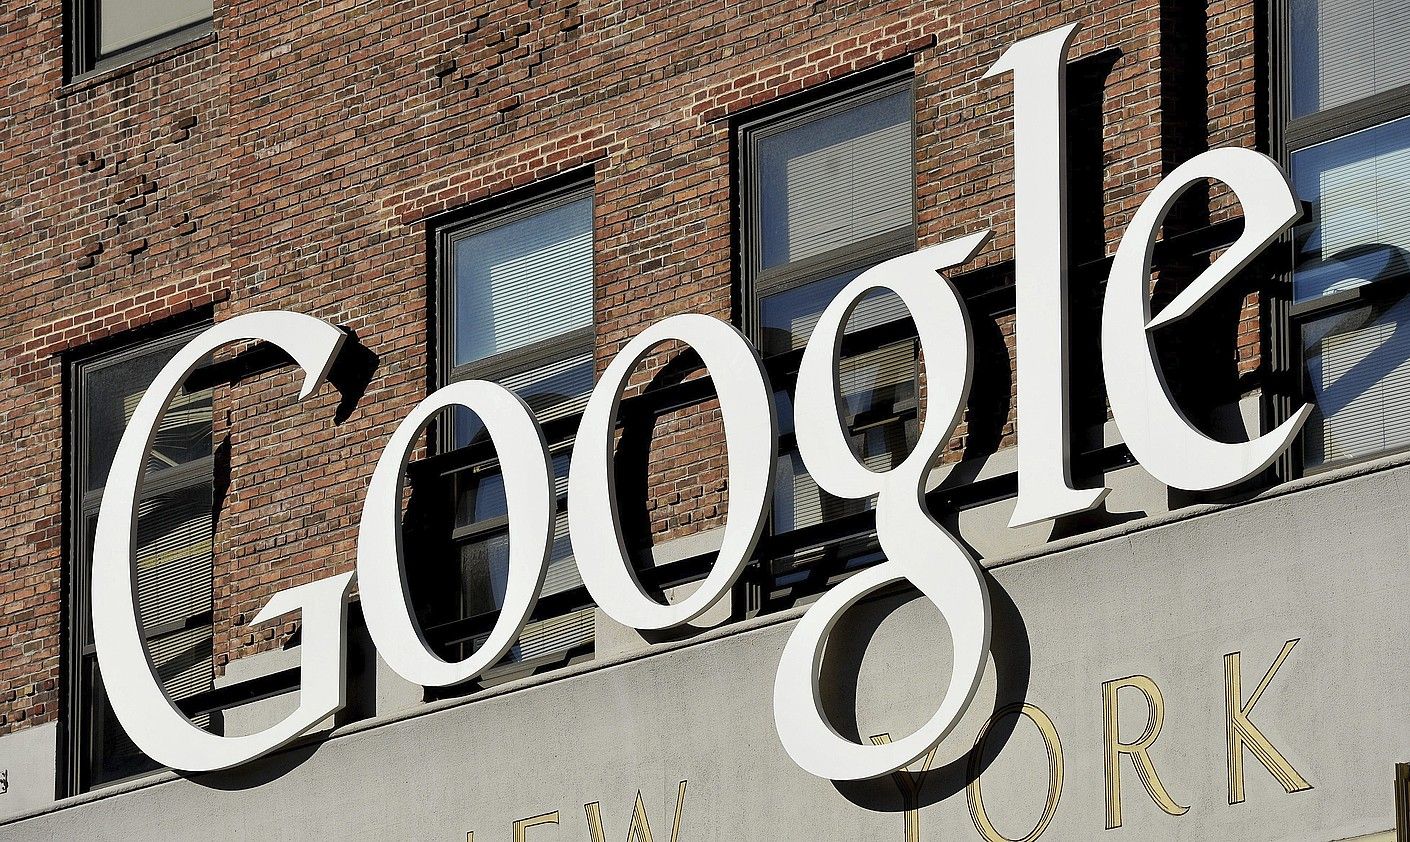 Google enpresak New York hirian dituen egoitzetako bat. JUSTIN LANE / EFE.